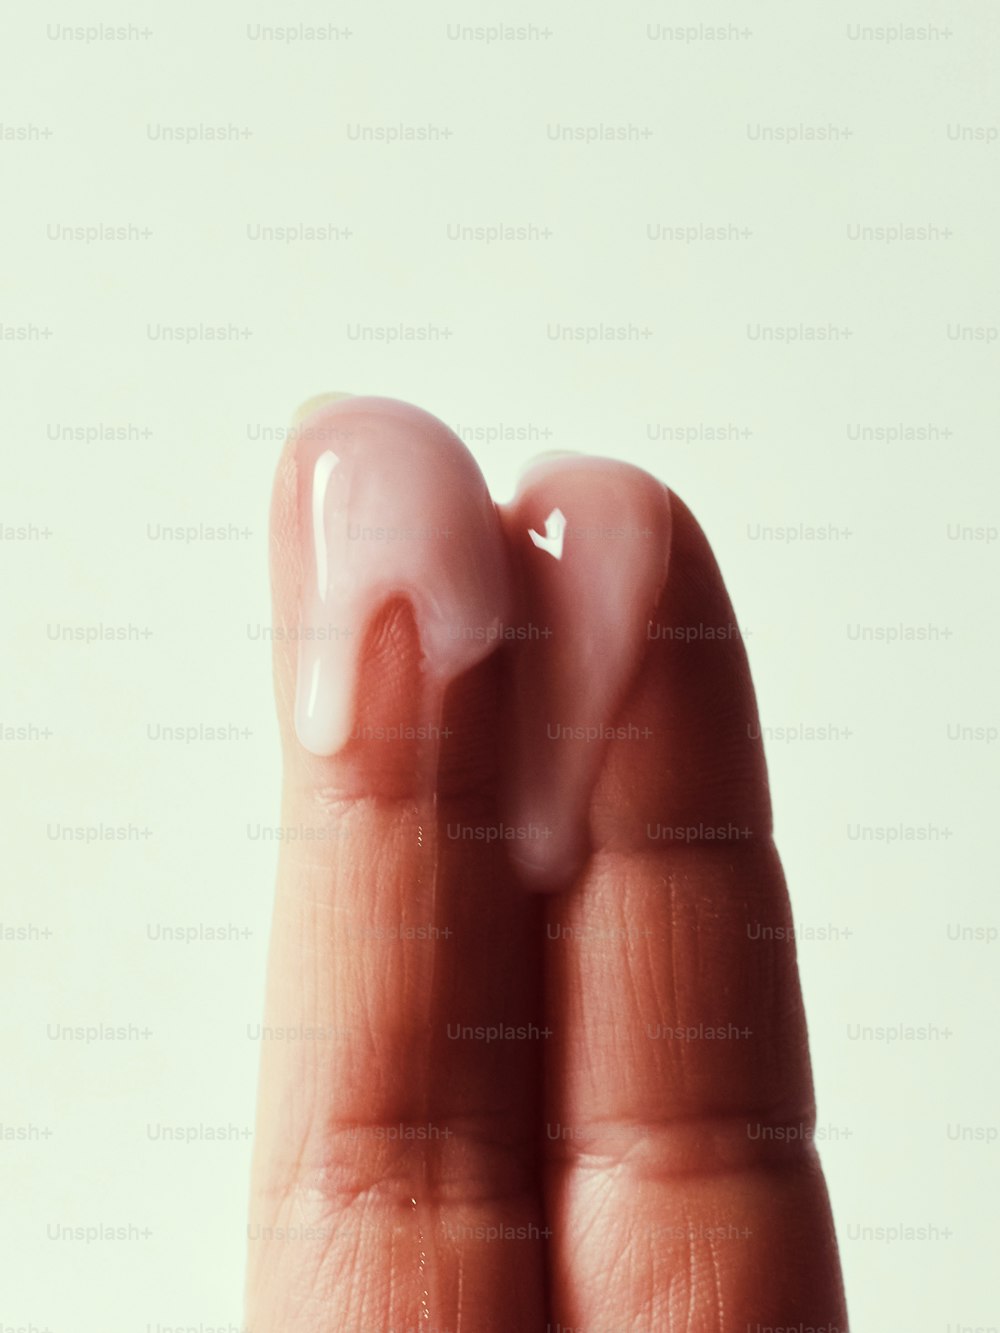 Die Hand einer Person, die einen falschen Zahn in Form eines Daumens hält